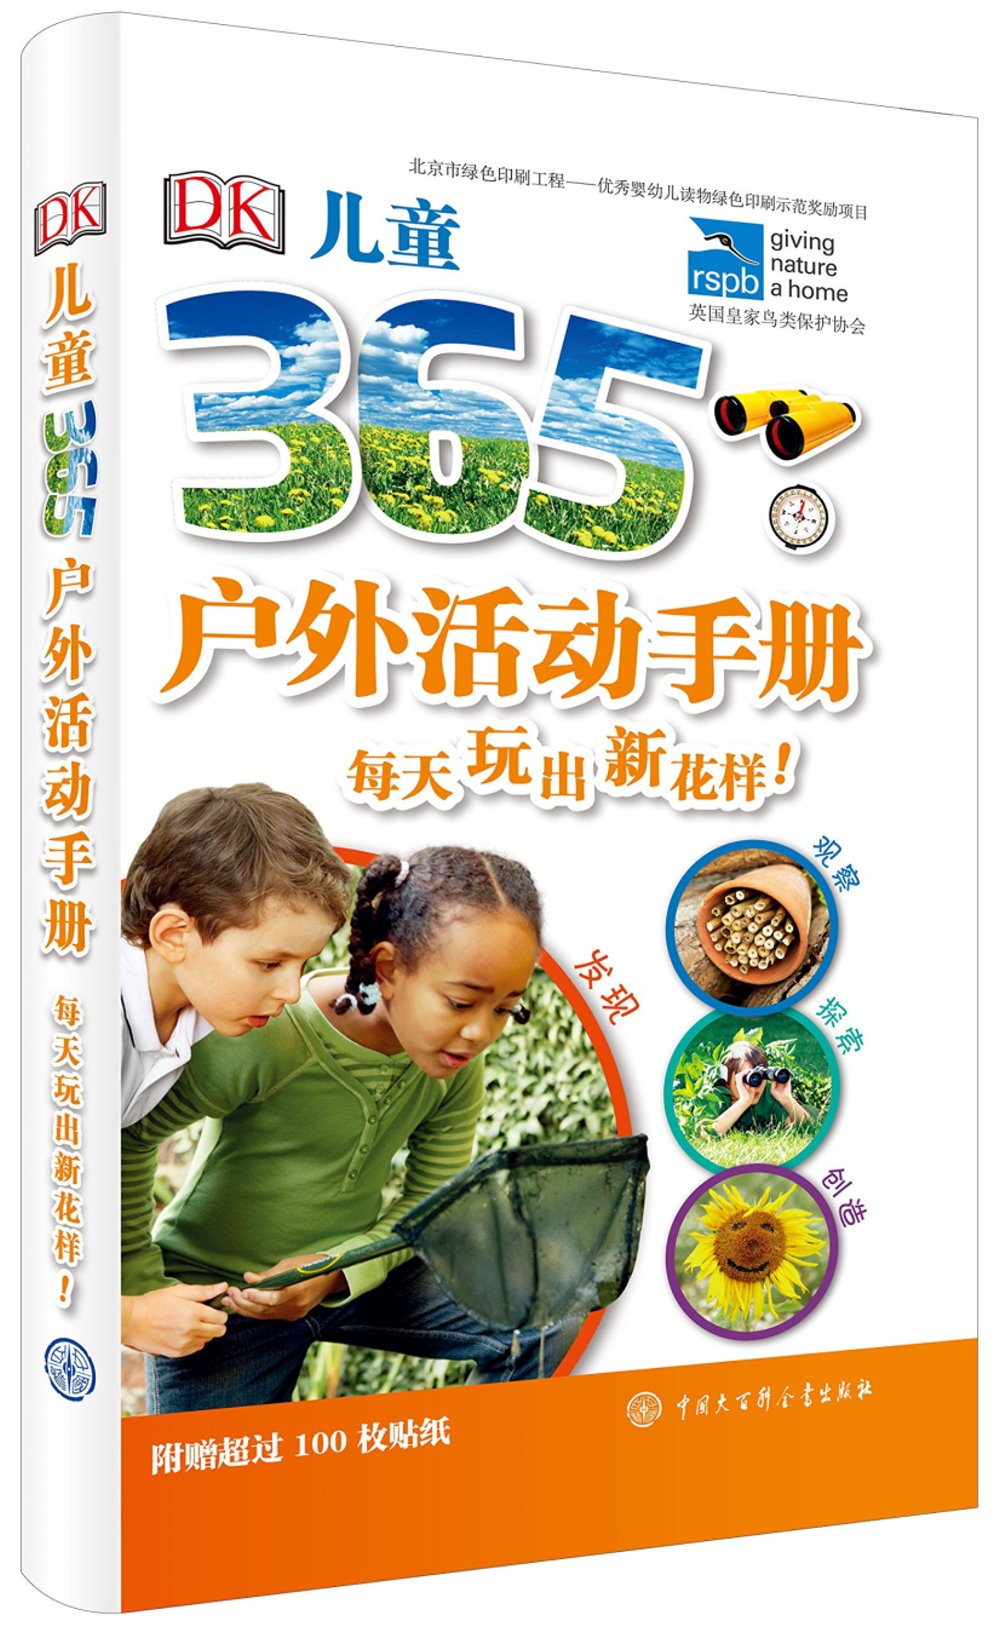 DK兒童365戶外活動手冊